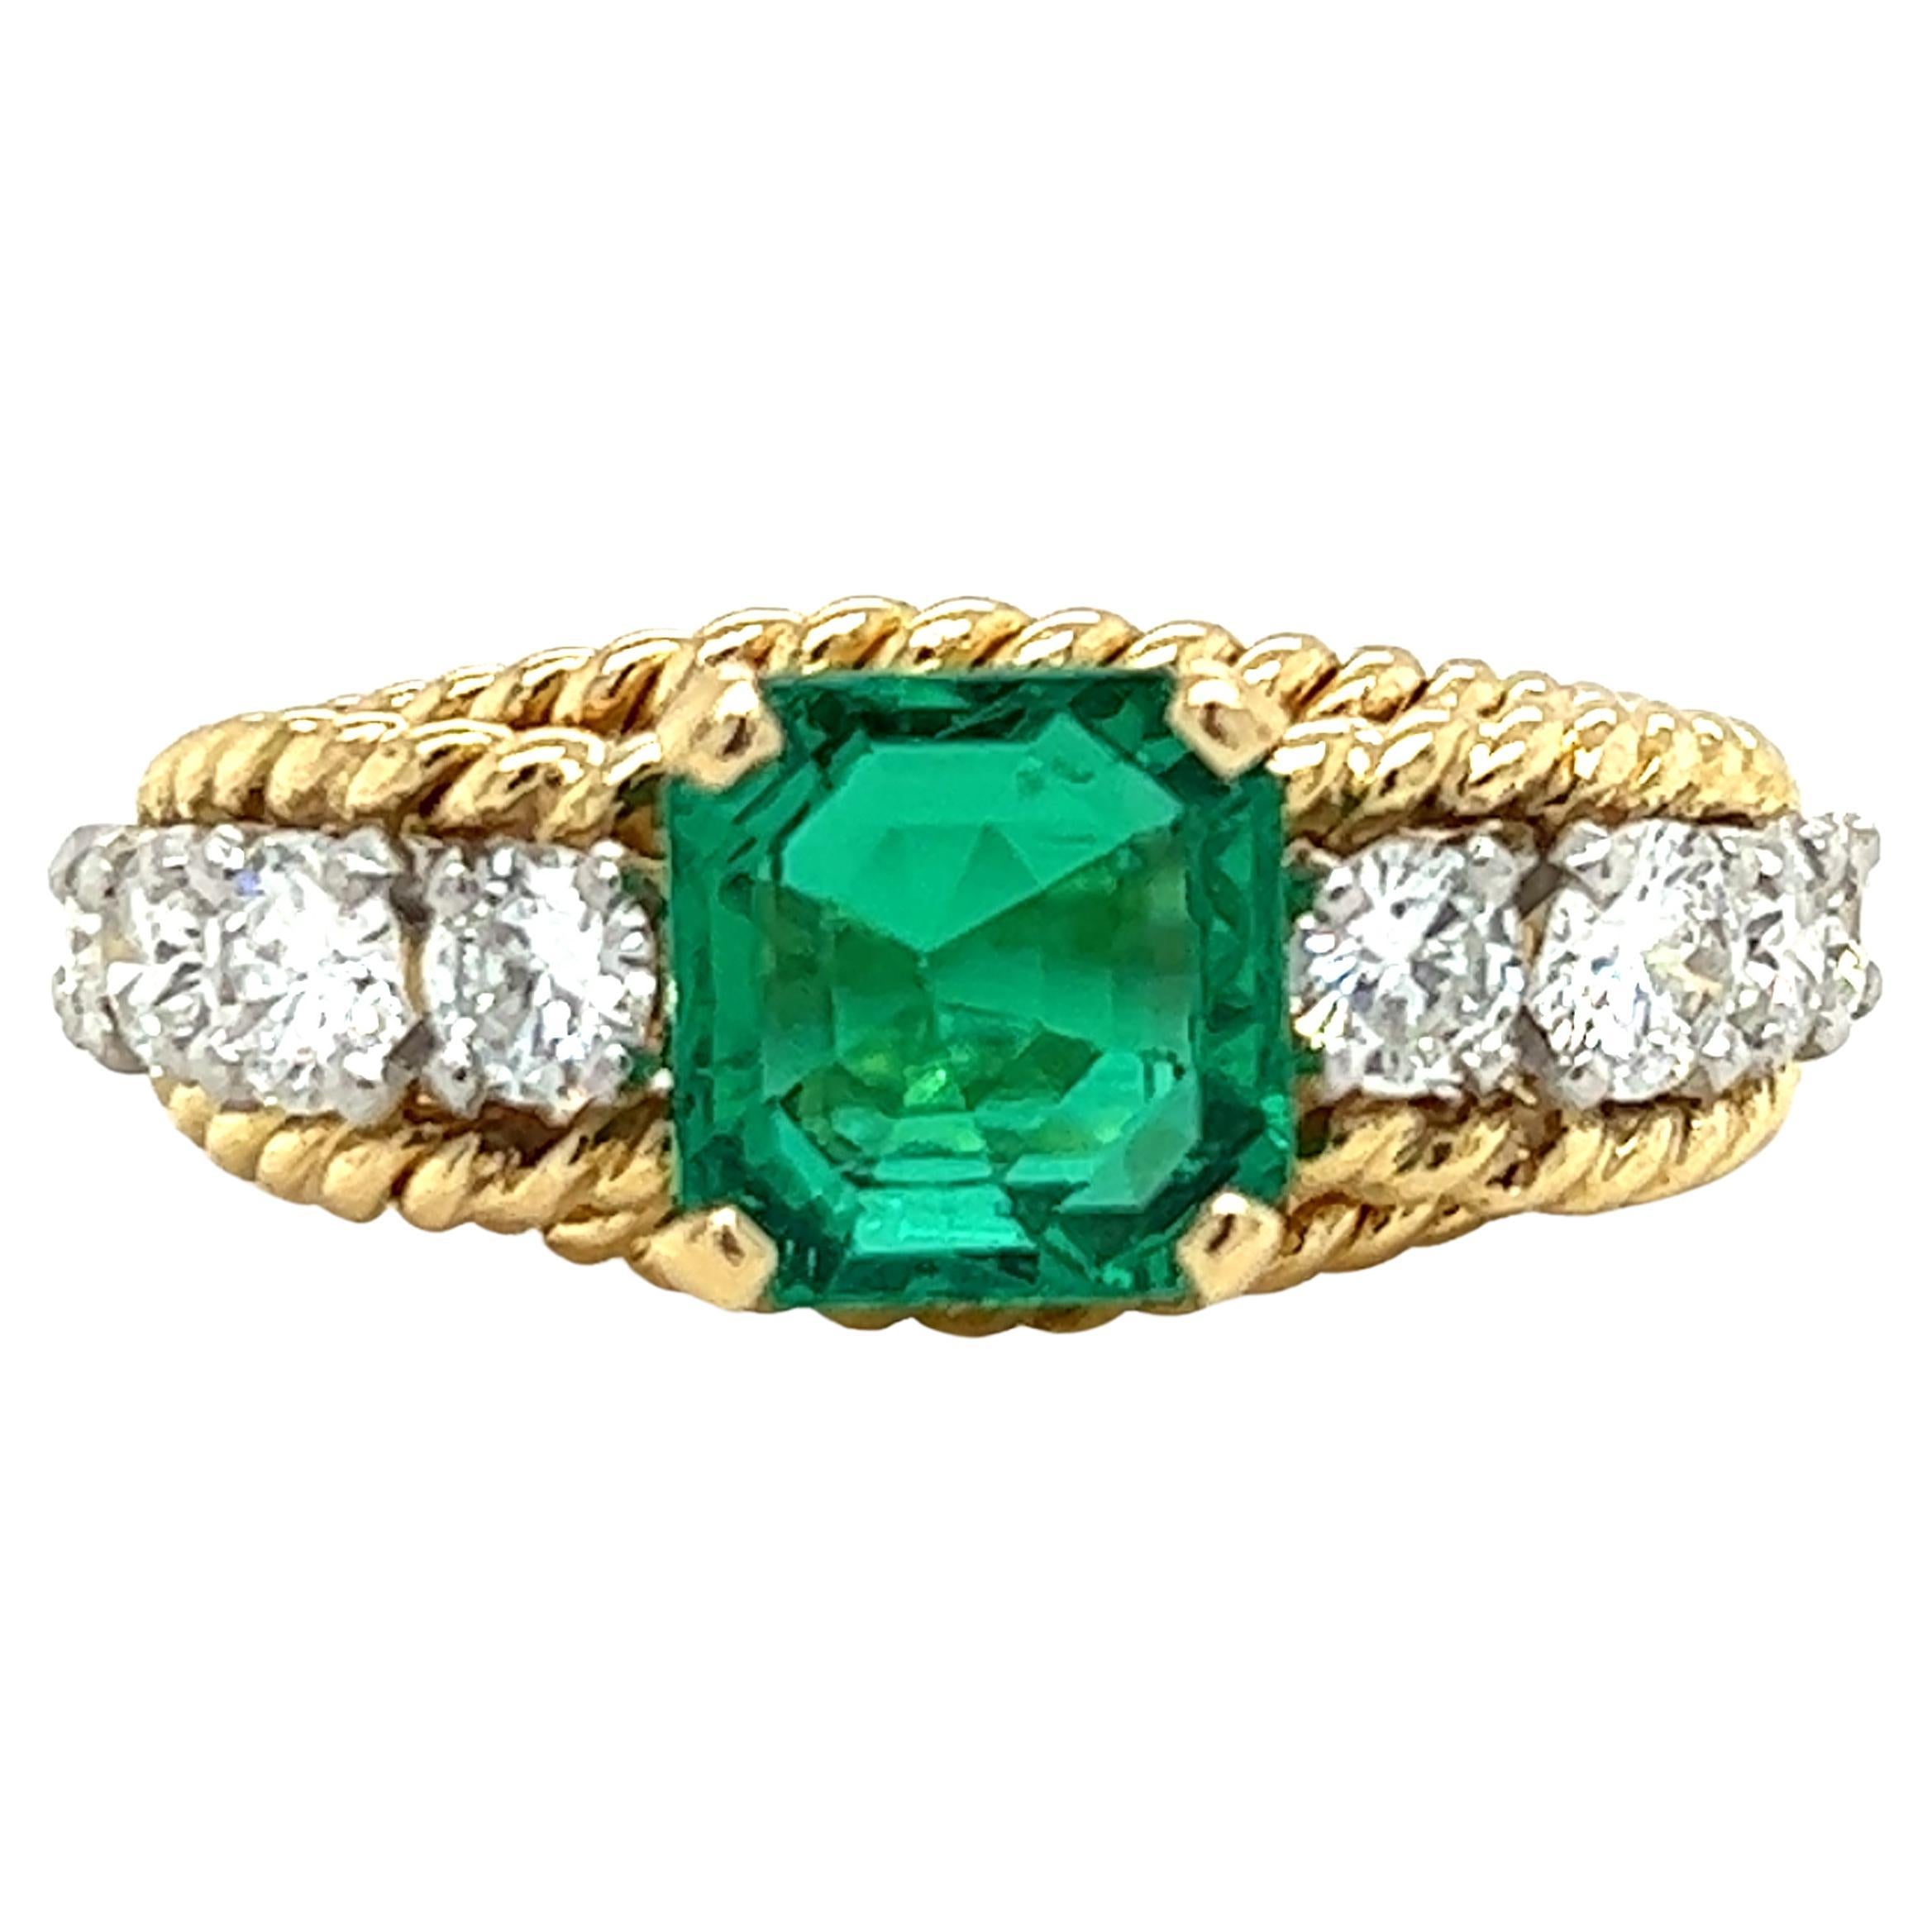 Smaragd & Diamant Seil Design Ring in 14K Gelbgold 